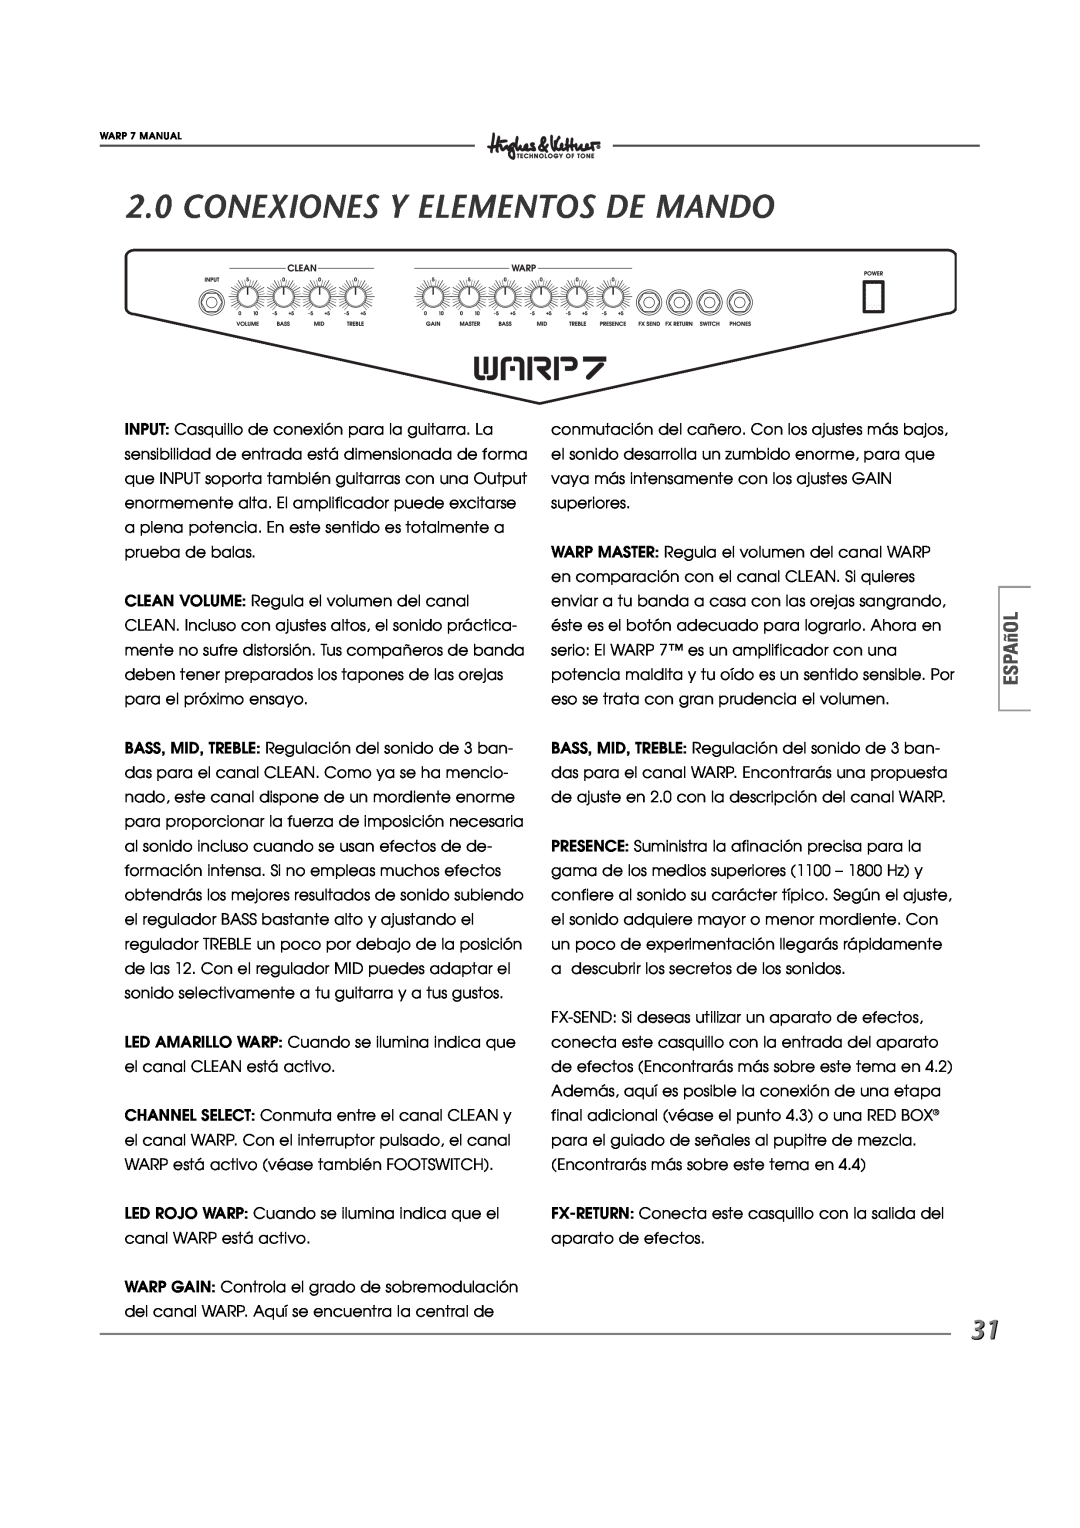 Hughes WARP7 manual Conexiones Y Elementos De Mando, ESPAñOL 